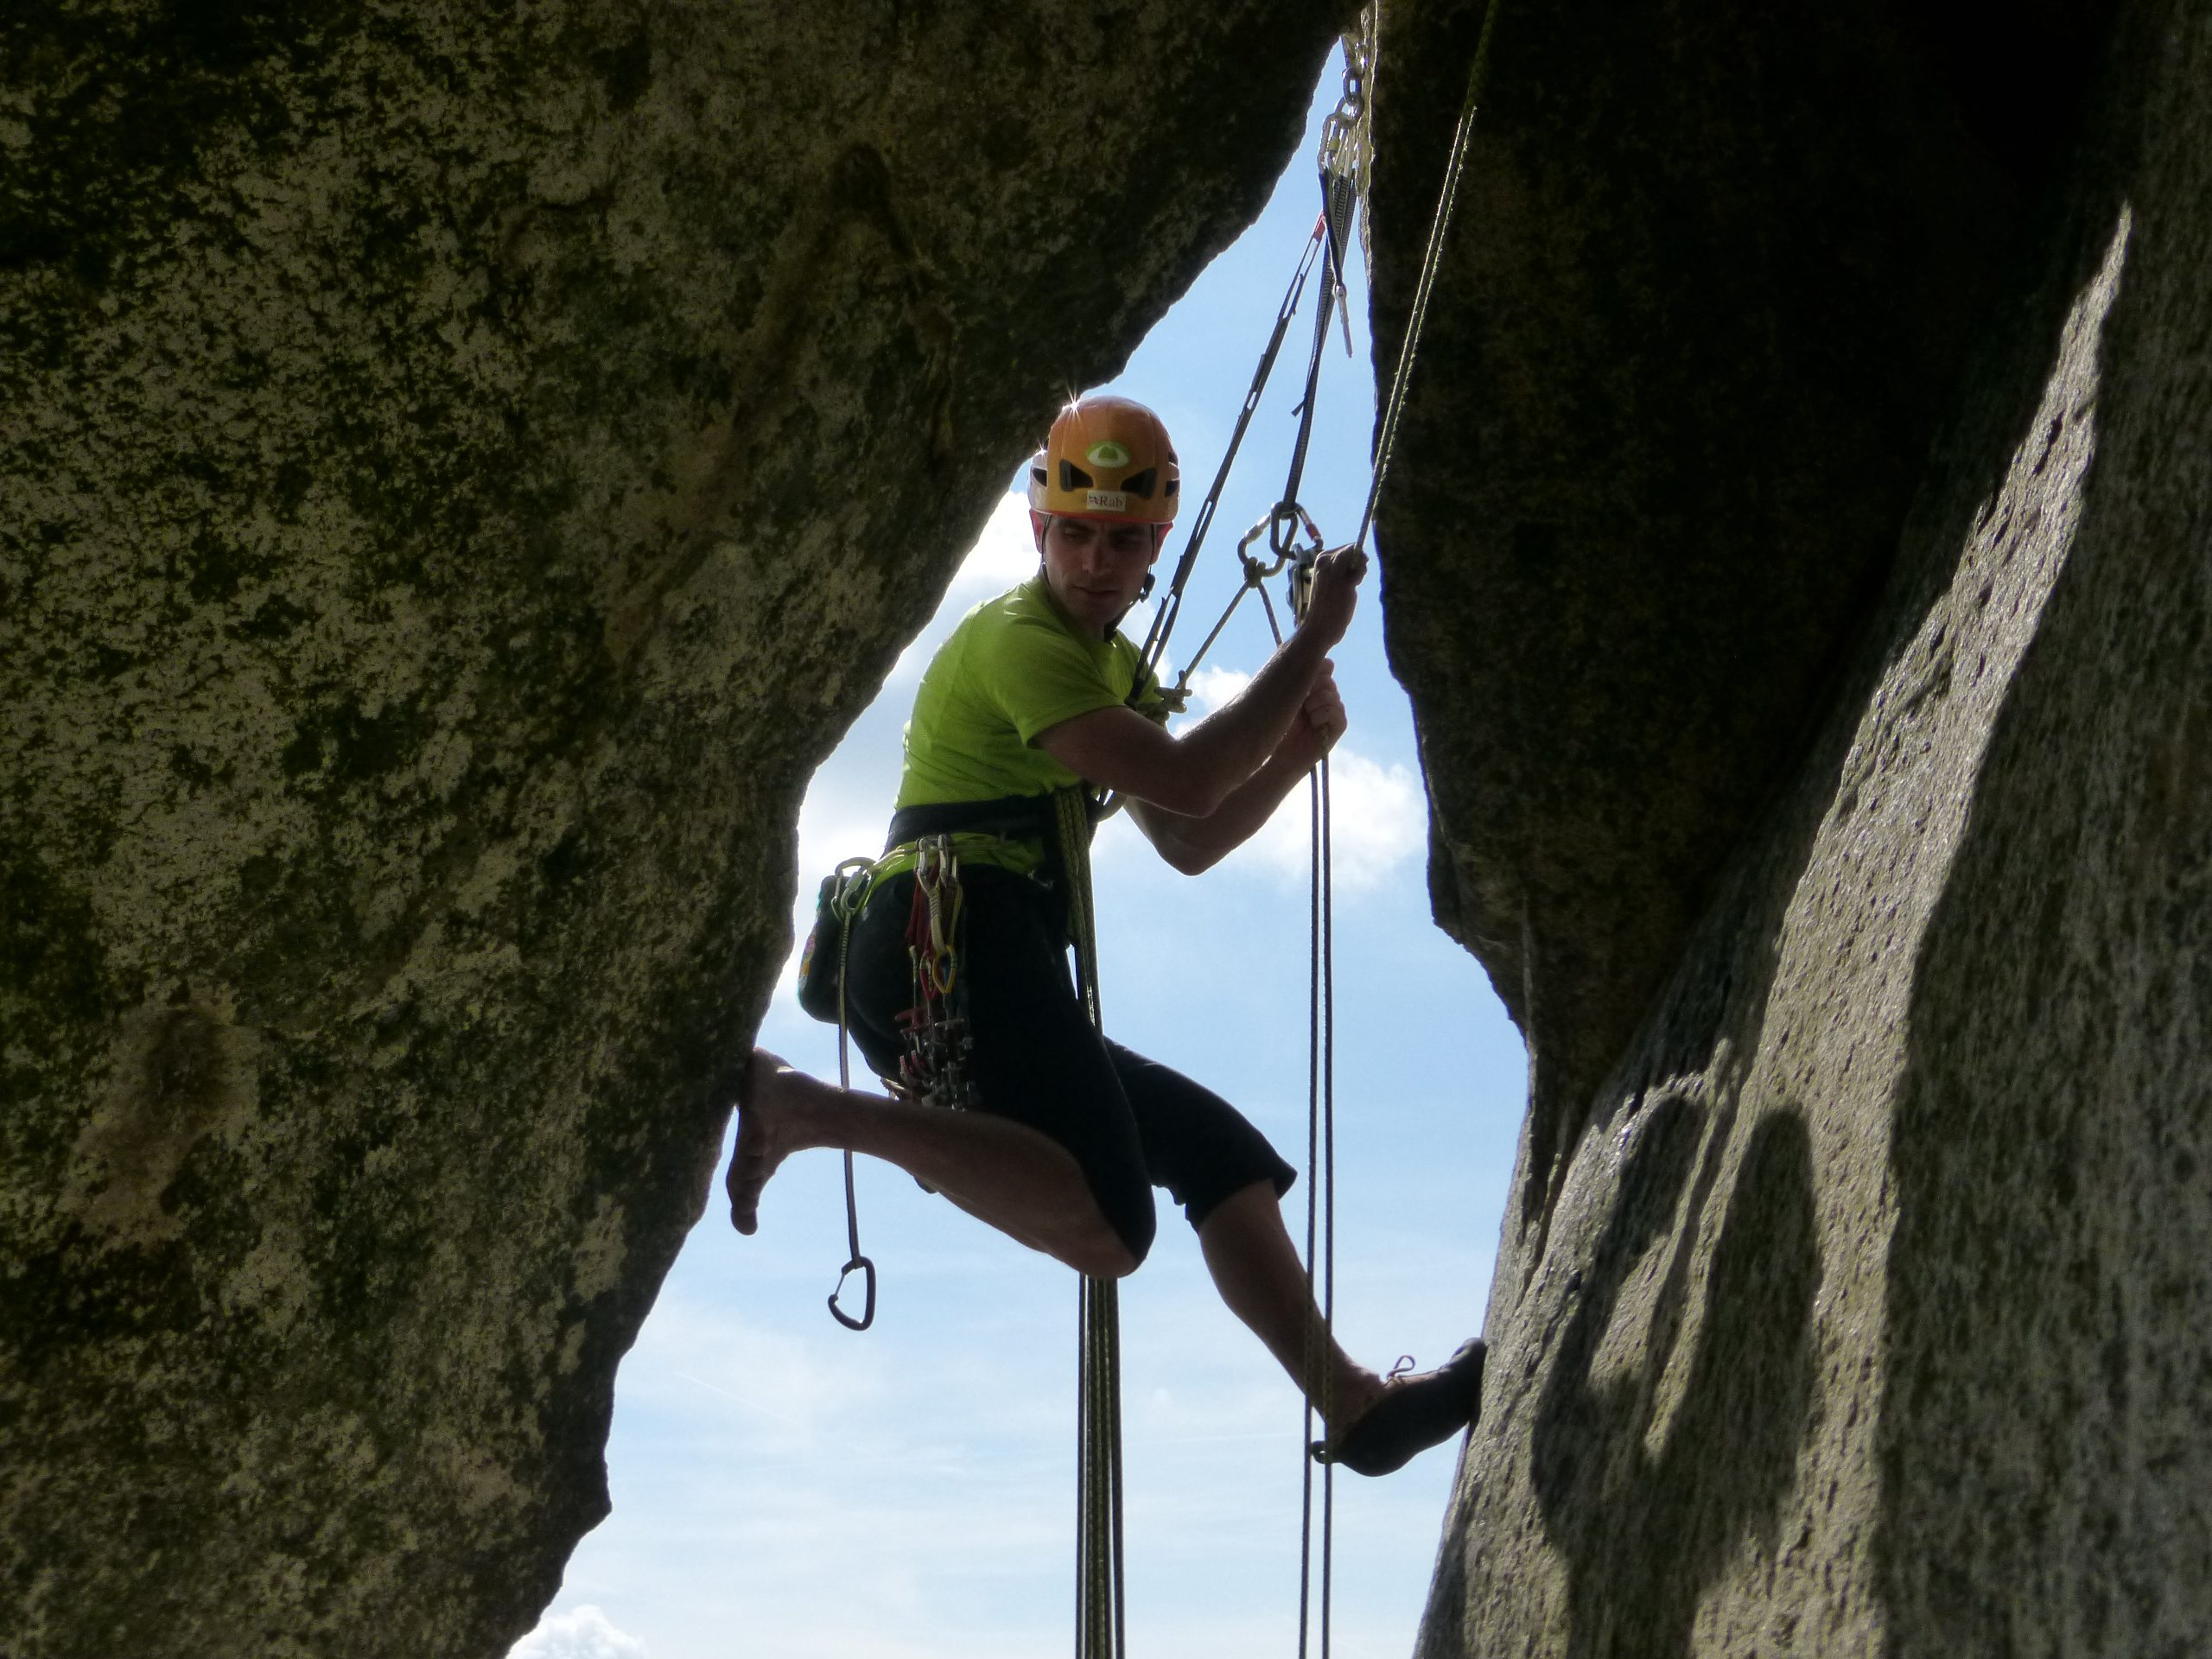 Curso de escalada en roca, nivel 4 (fisuras, diedros y chimeneas). Cataluña